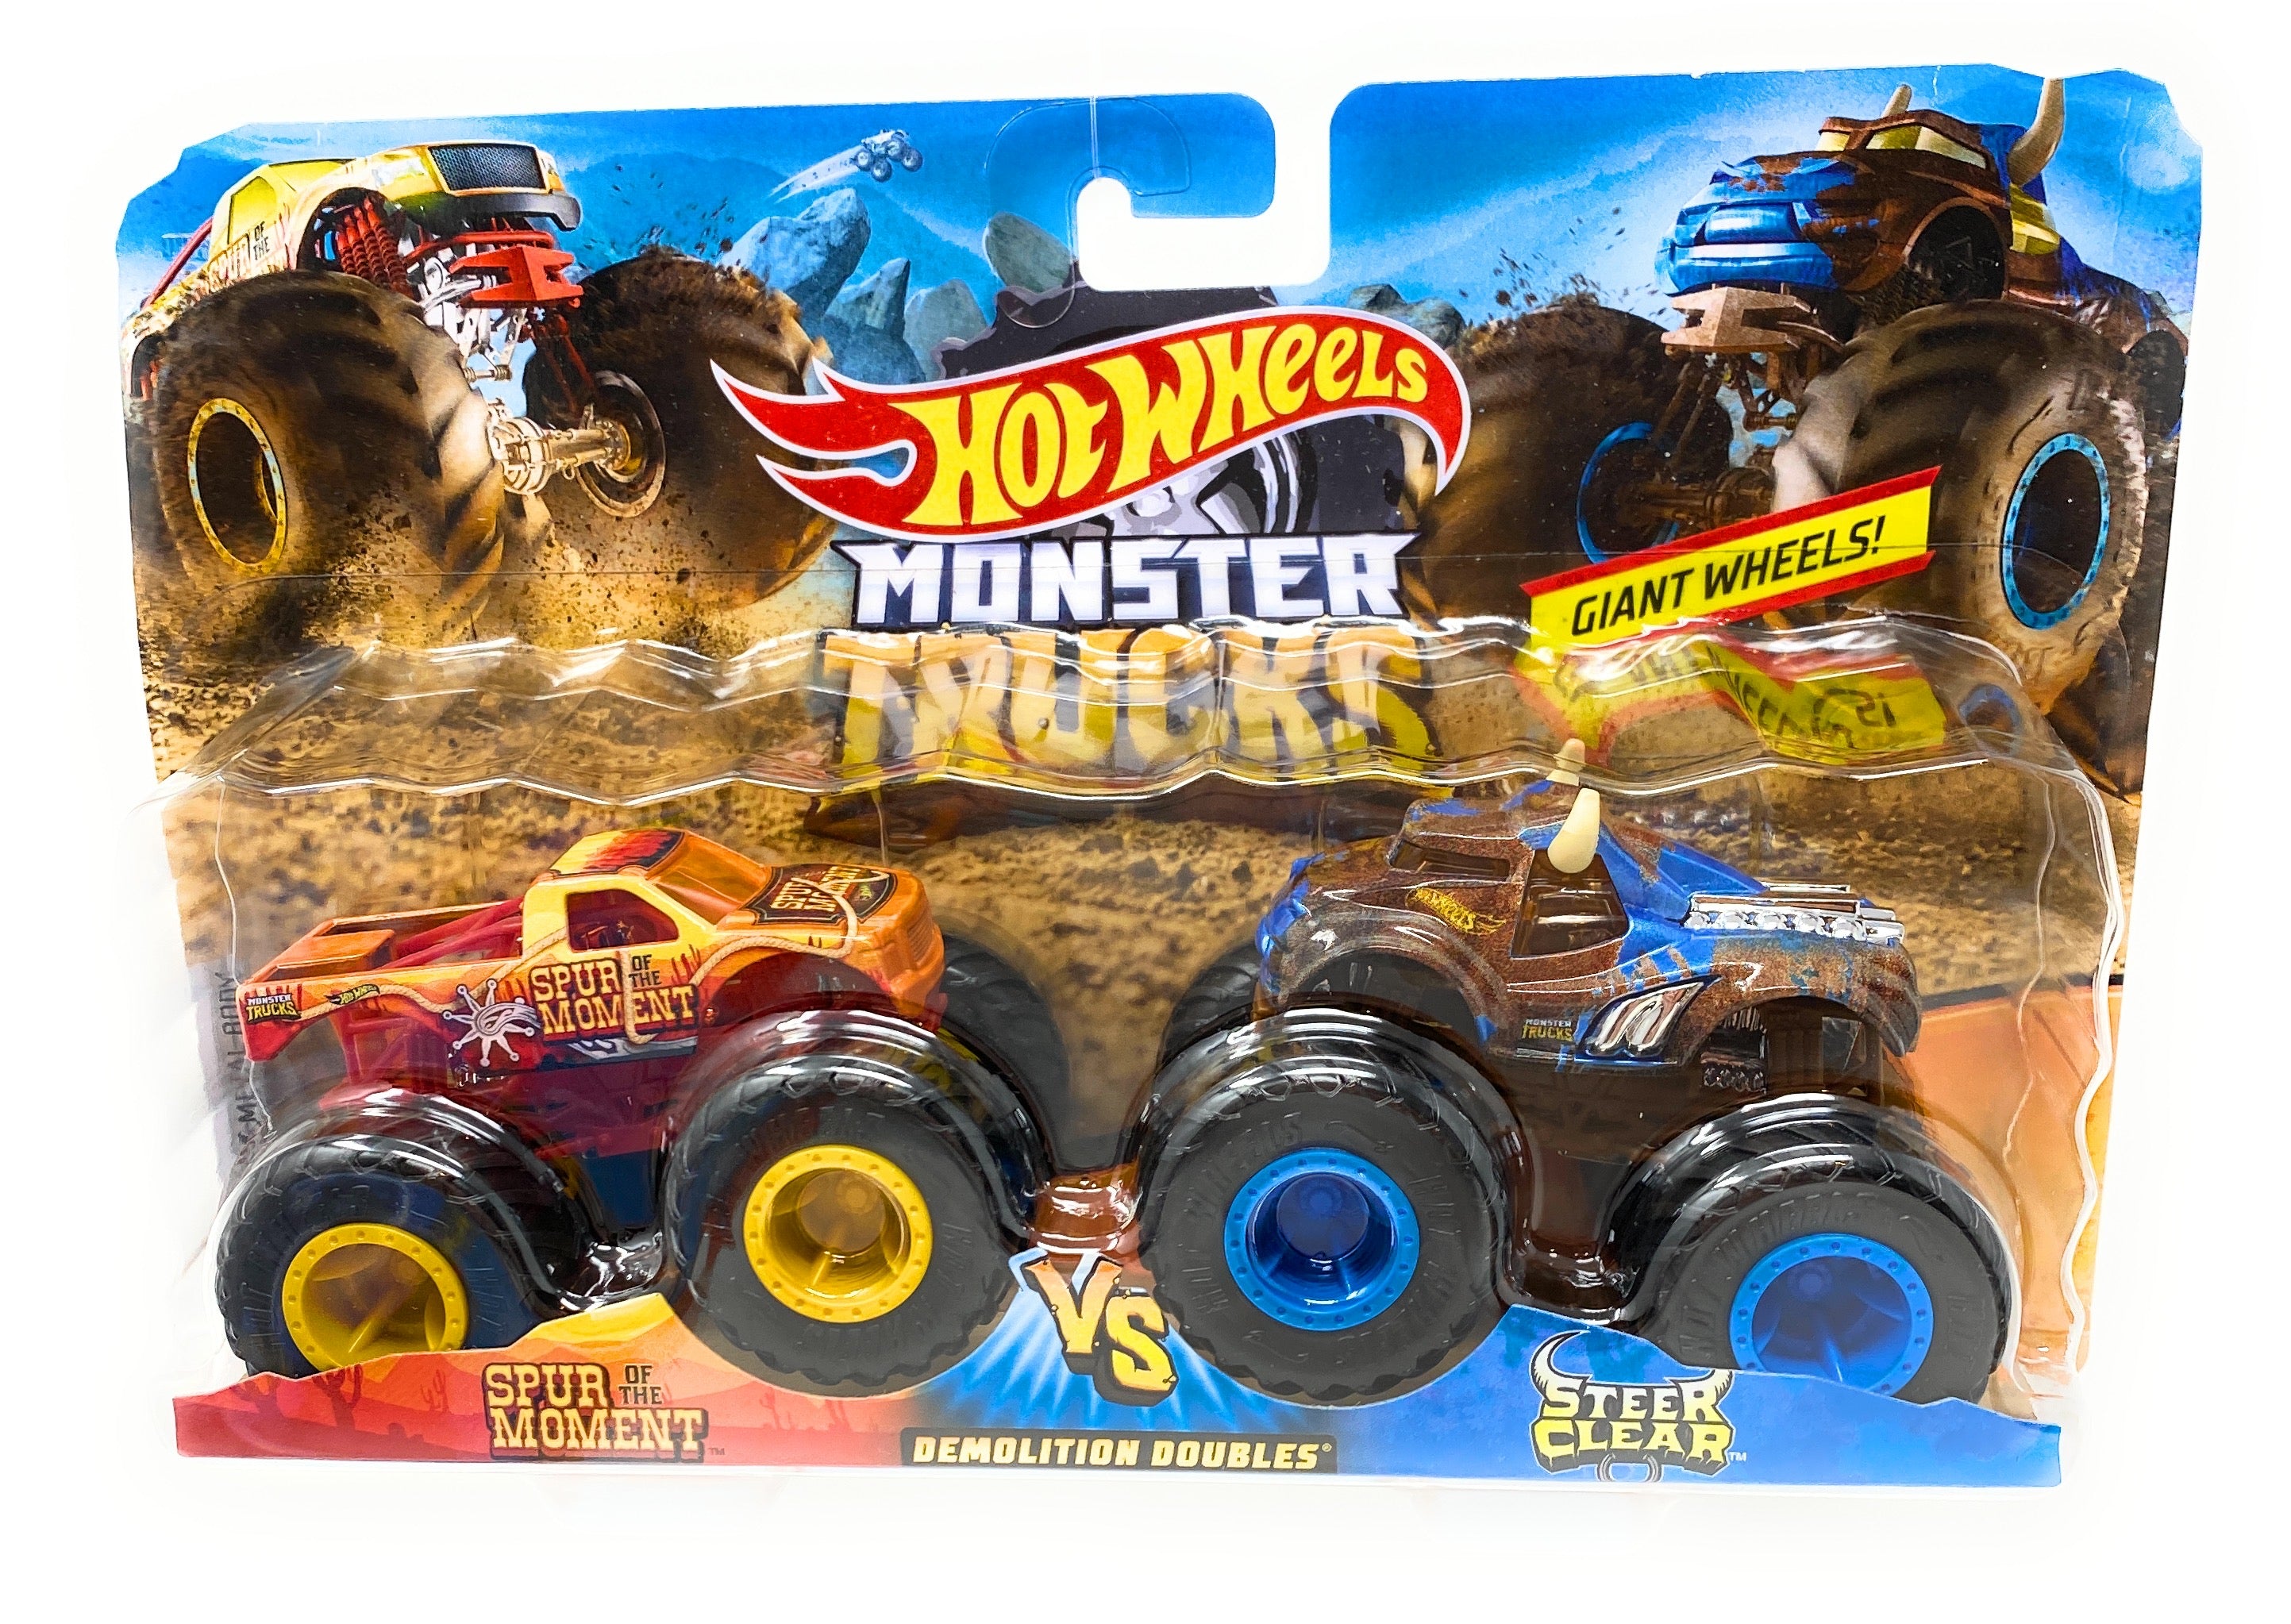 Hot Wheels Monster Trucks 2 Pack Spur of the Moment vs. Steer Clear